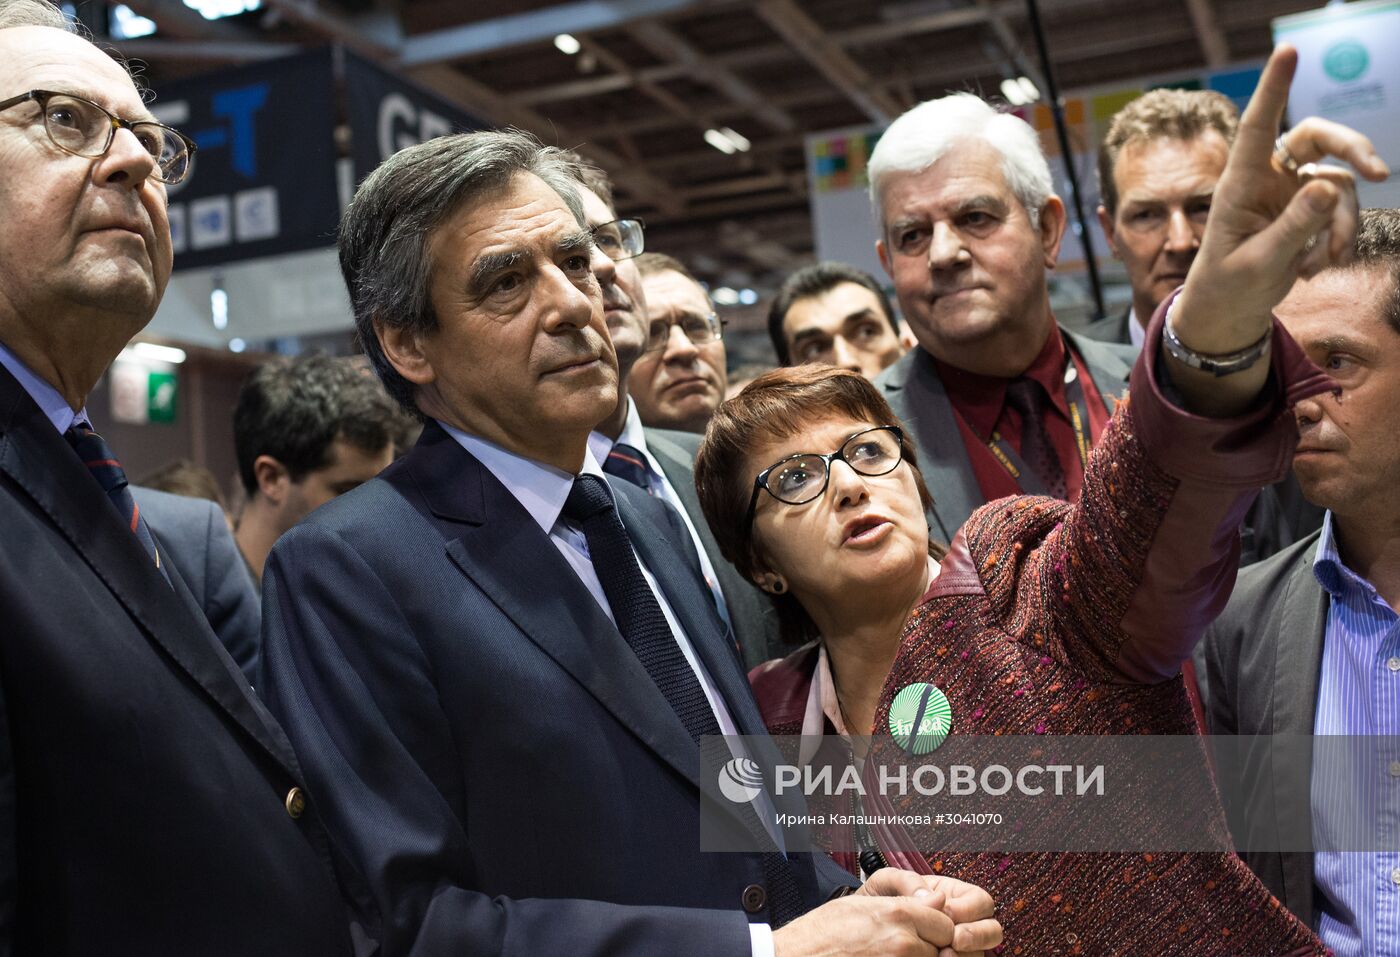 Кандидаты в президенты Франции посетили с/х выставку в Париже